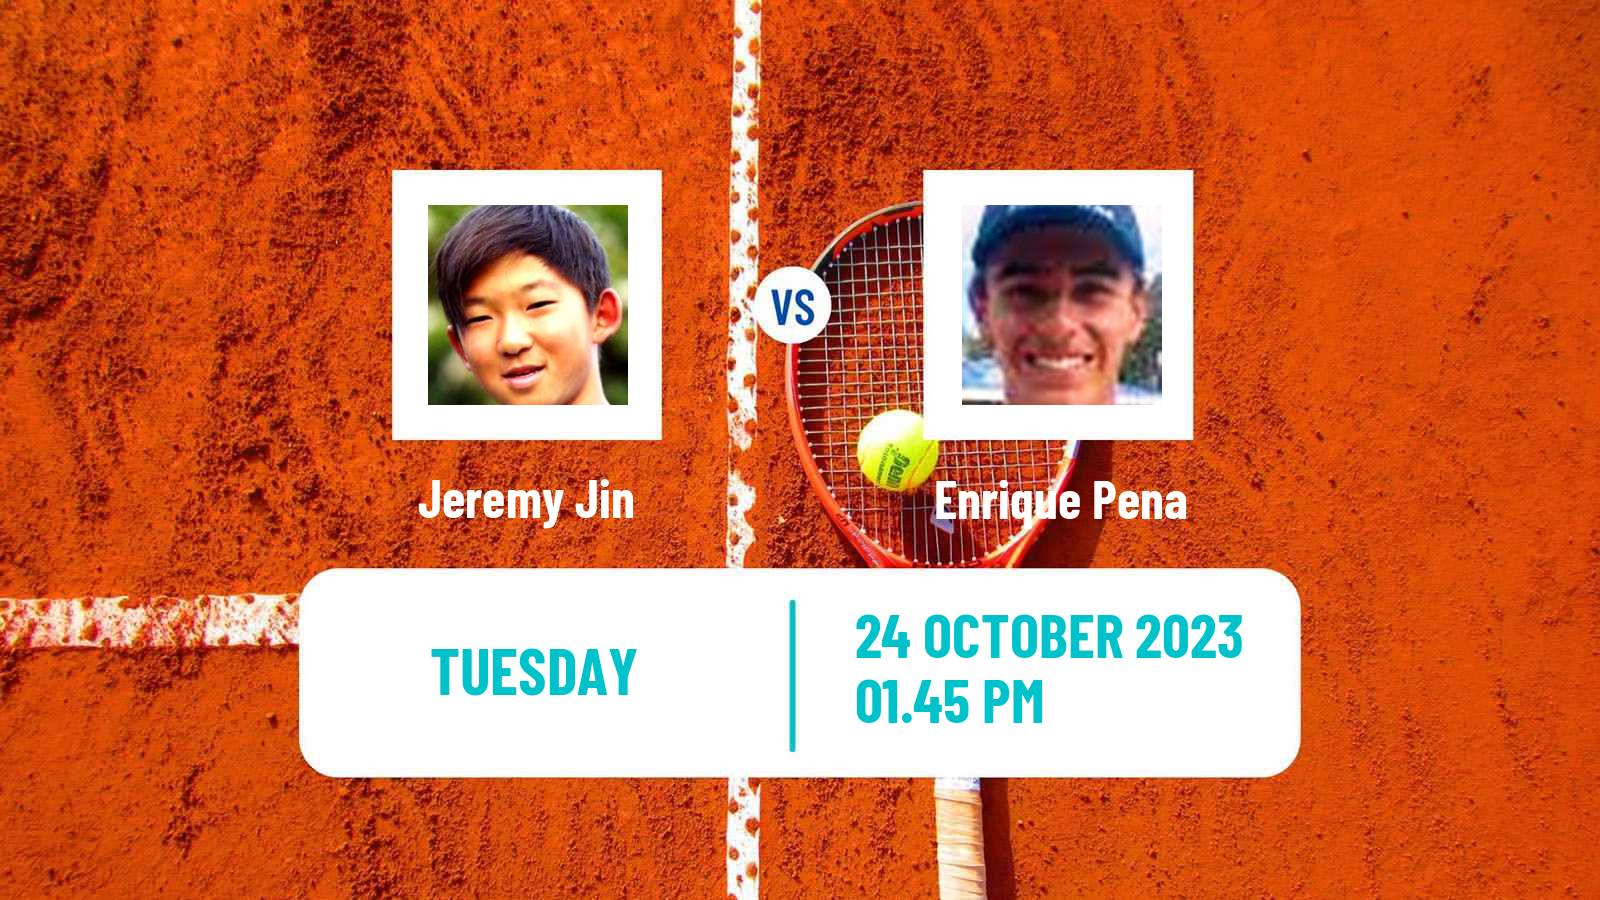 Tennis ITF M15 Tallahassee Fl Men Jeremy Jin - Enrique Pena